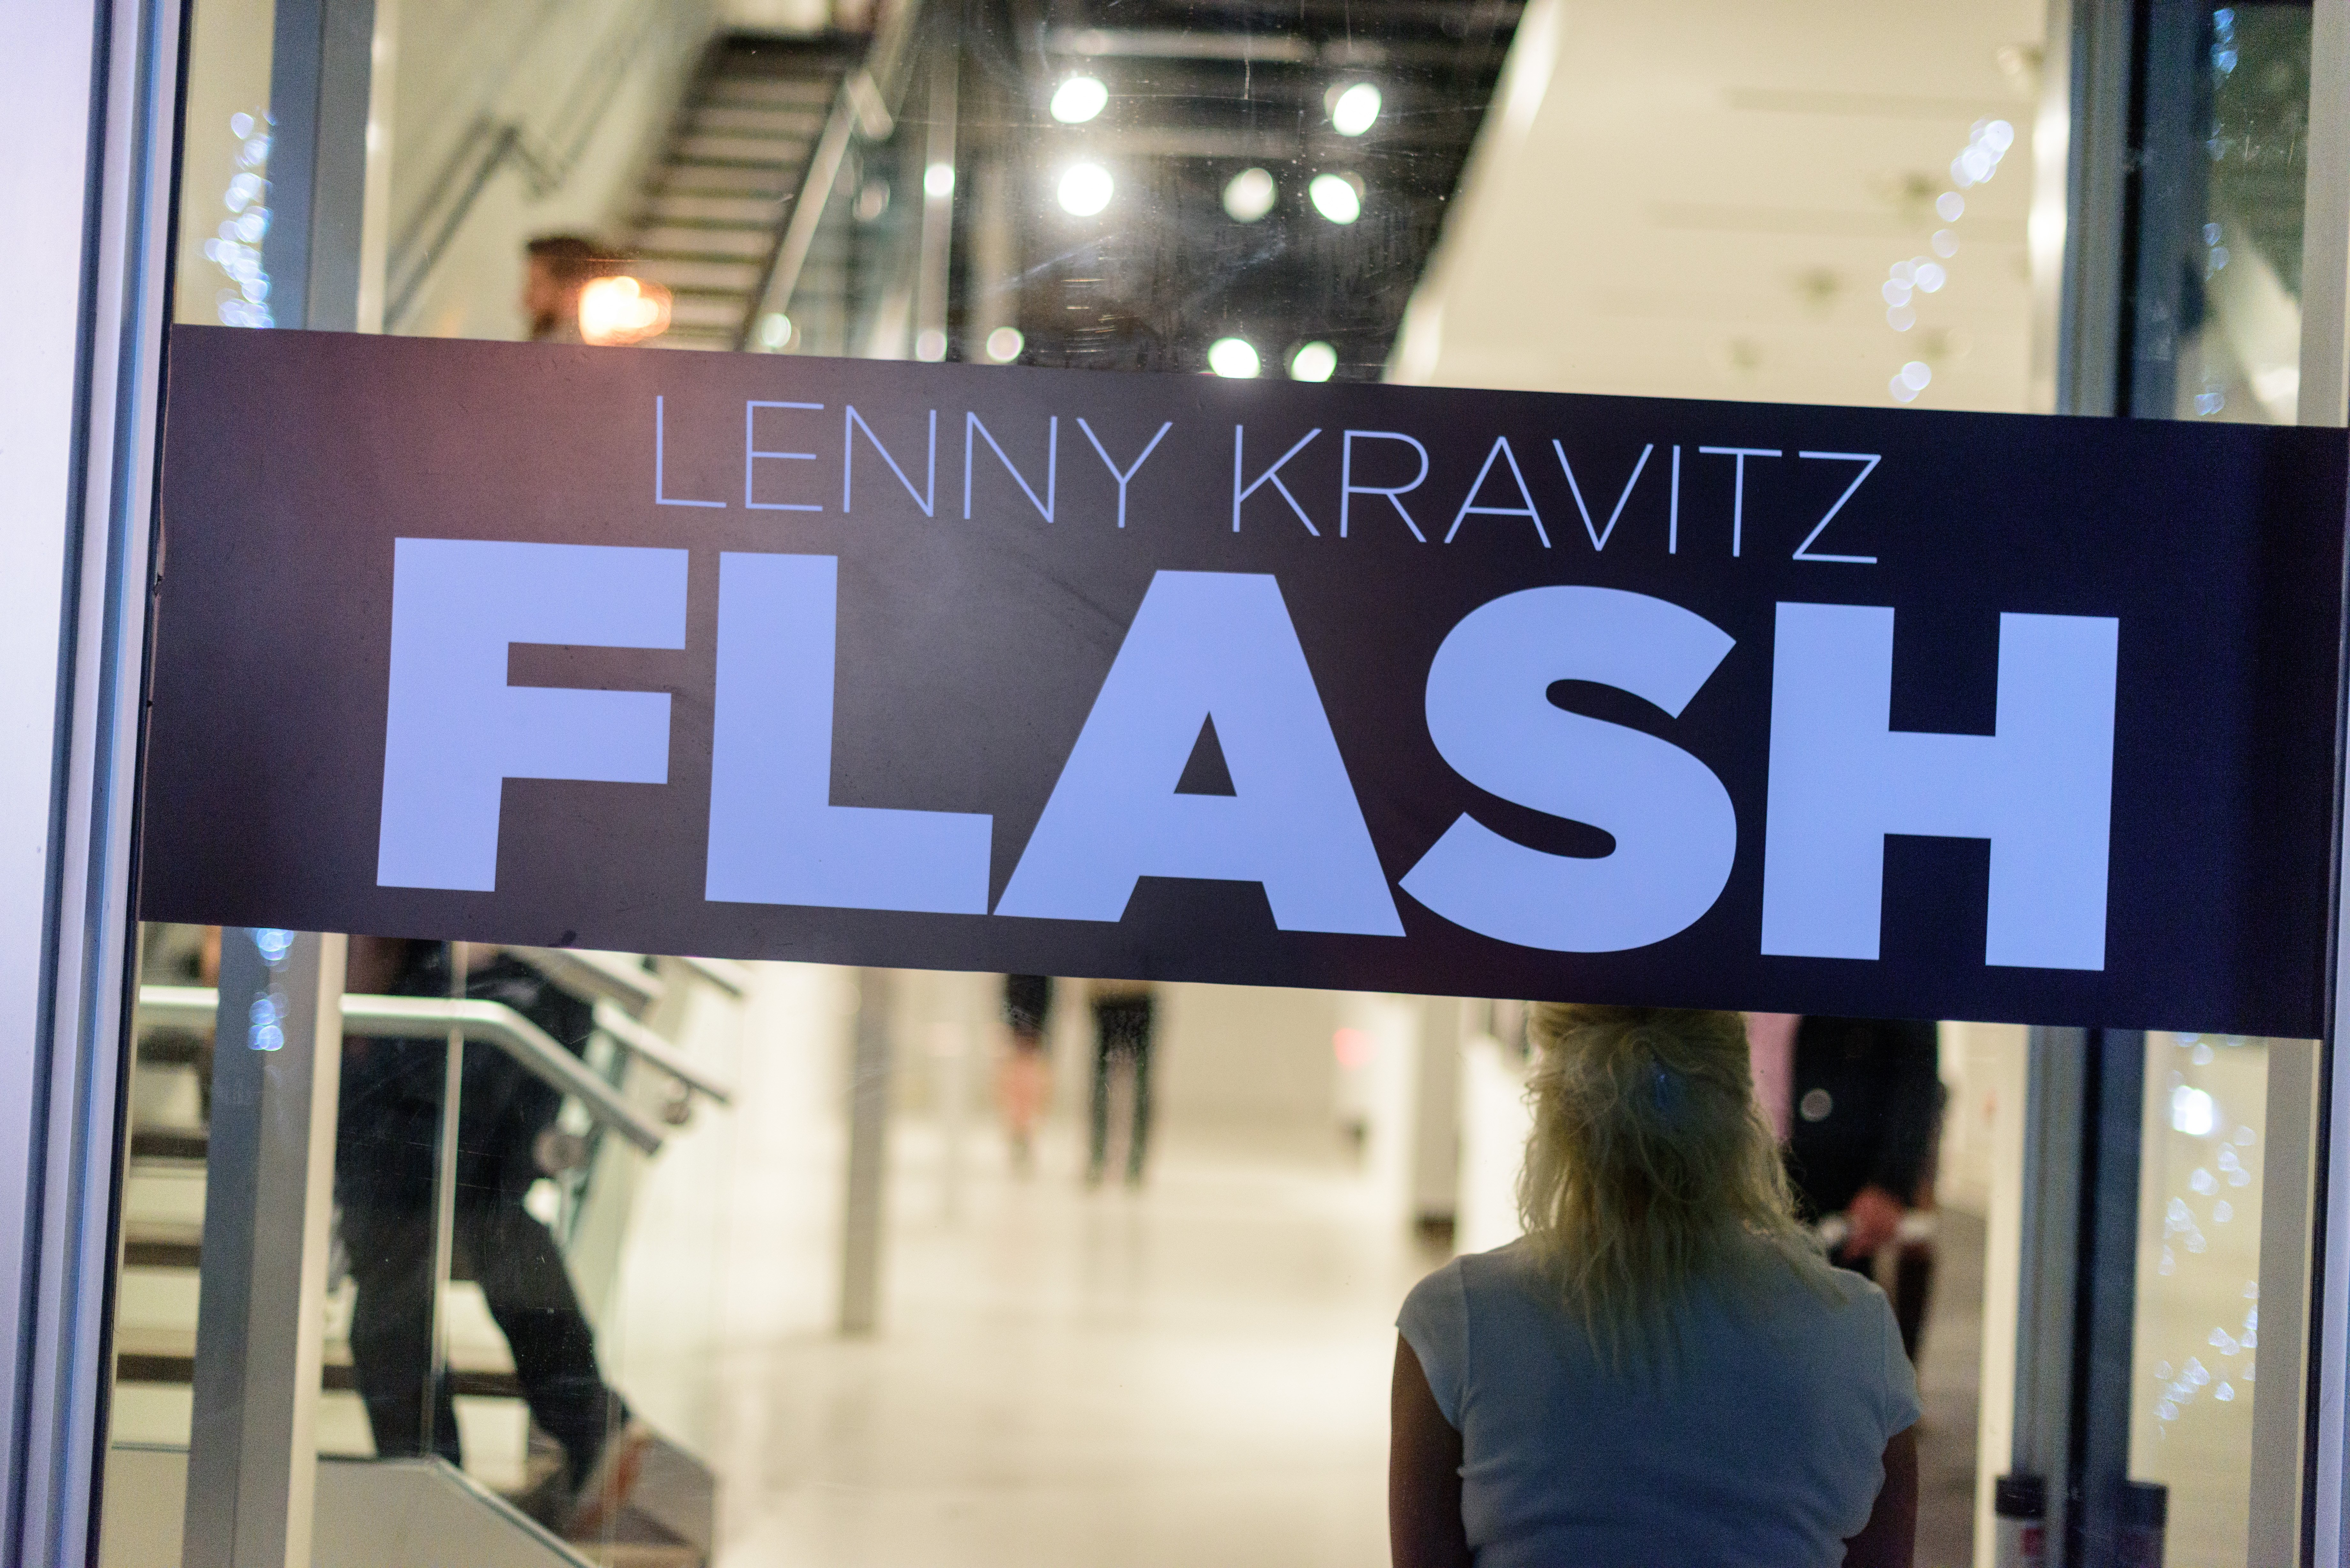 Lenny Kravits Flash